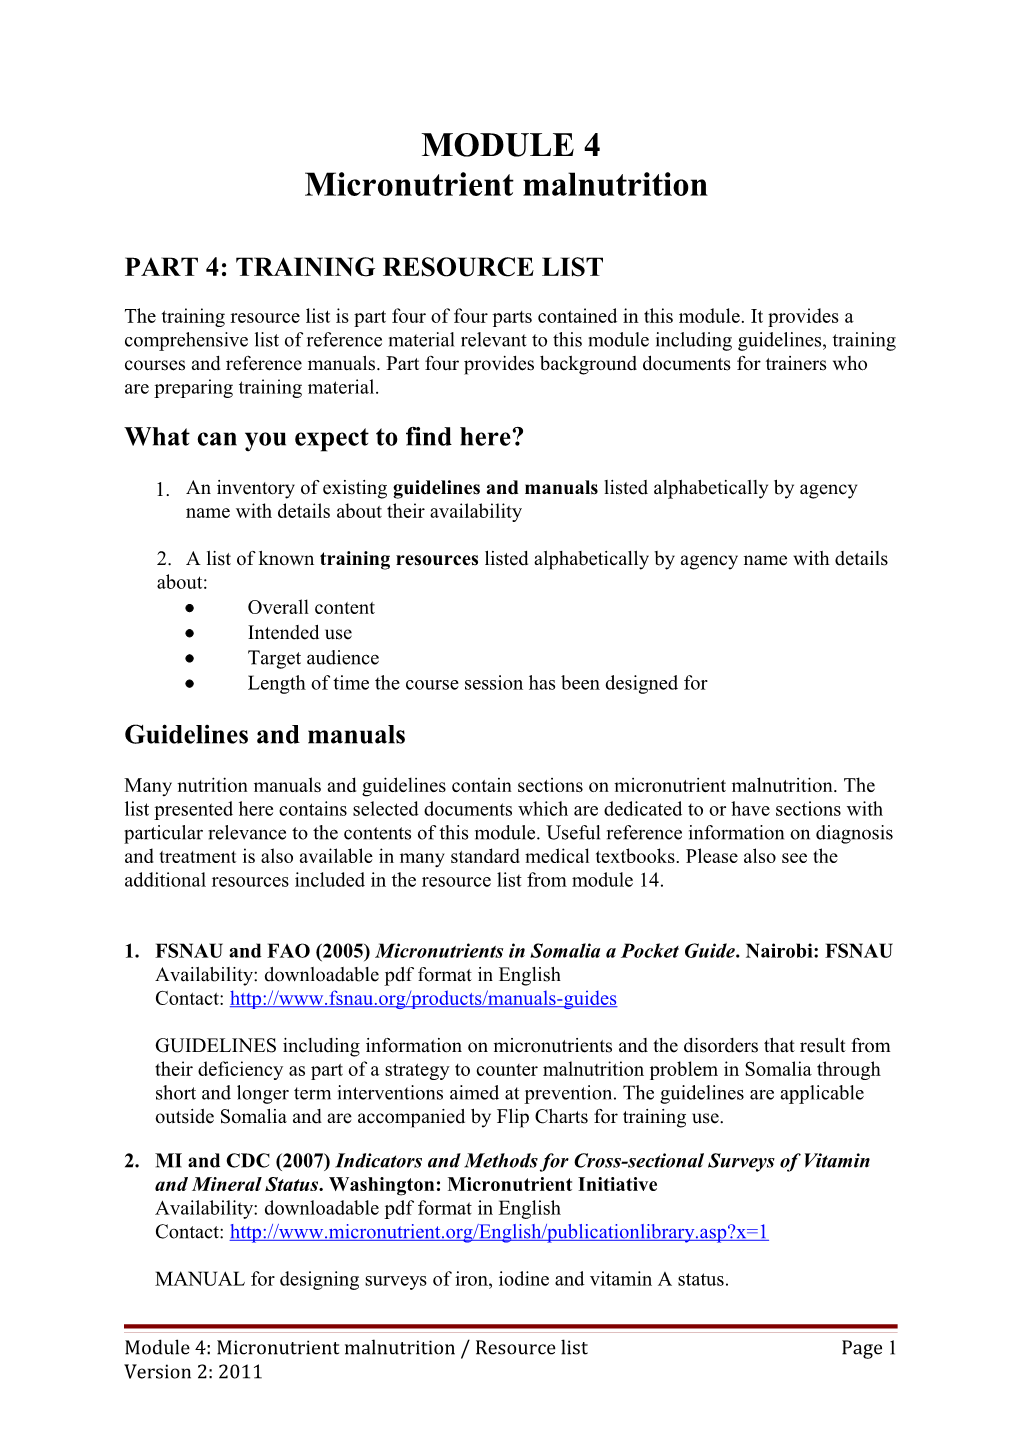 Part 4: Training Resource List